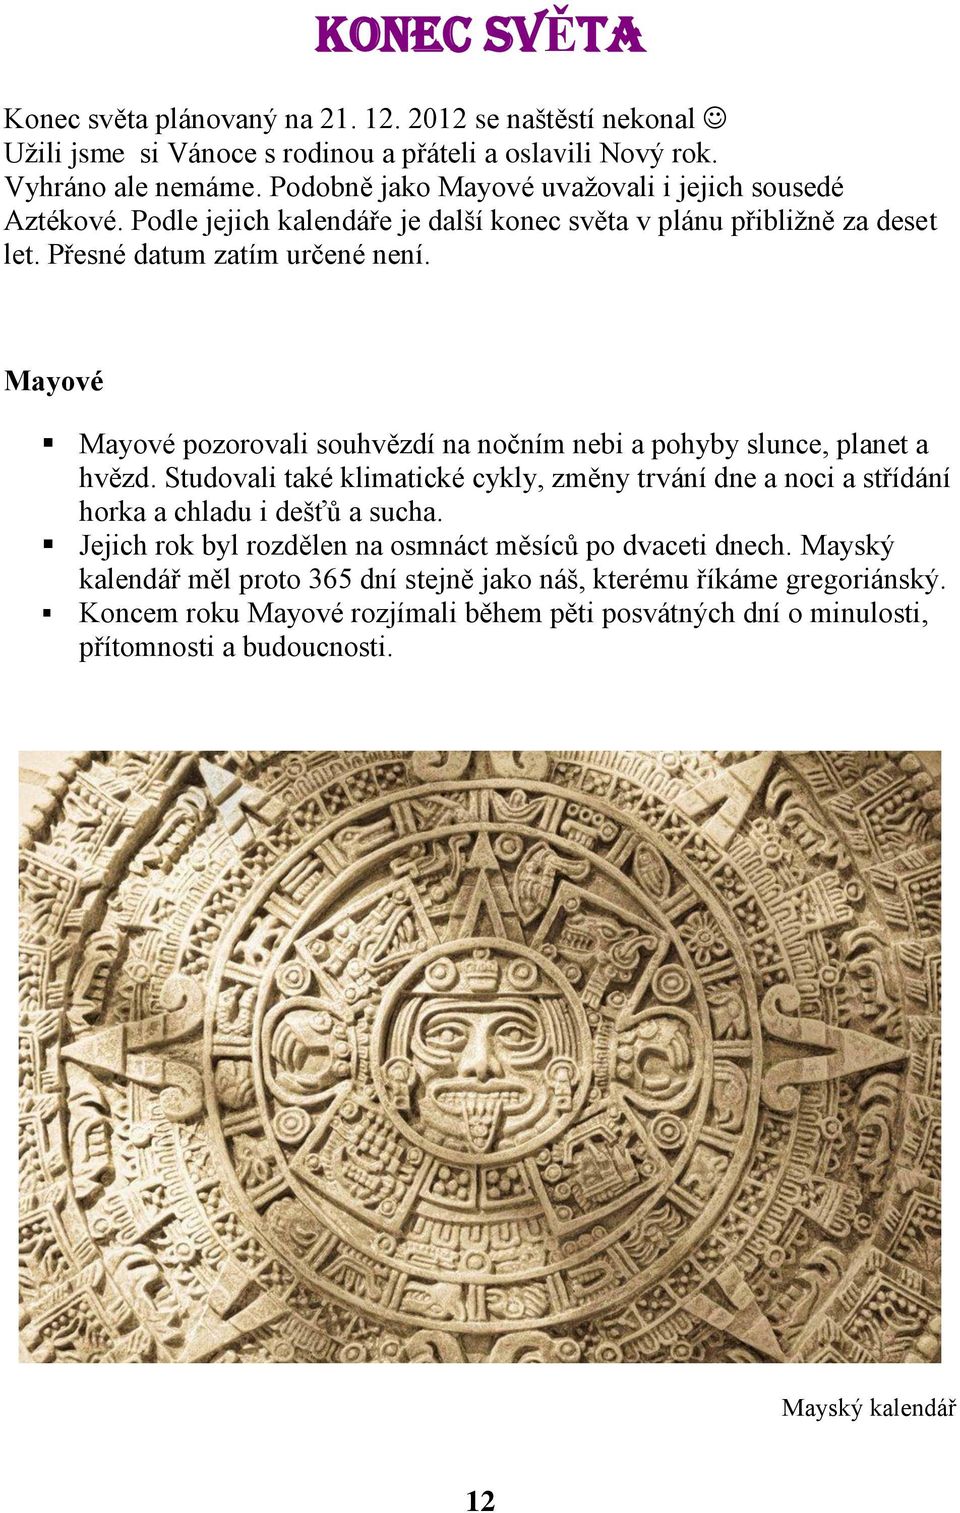 Mayové Mayové pozorovali souhvězdí na nočním nebi a pohyby slunce, planet a hvězd. Studovali také klimatické cykly, změny trvání dne a noci a střídání horka a chladu i dešťů a sucha.